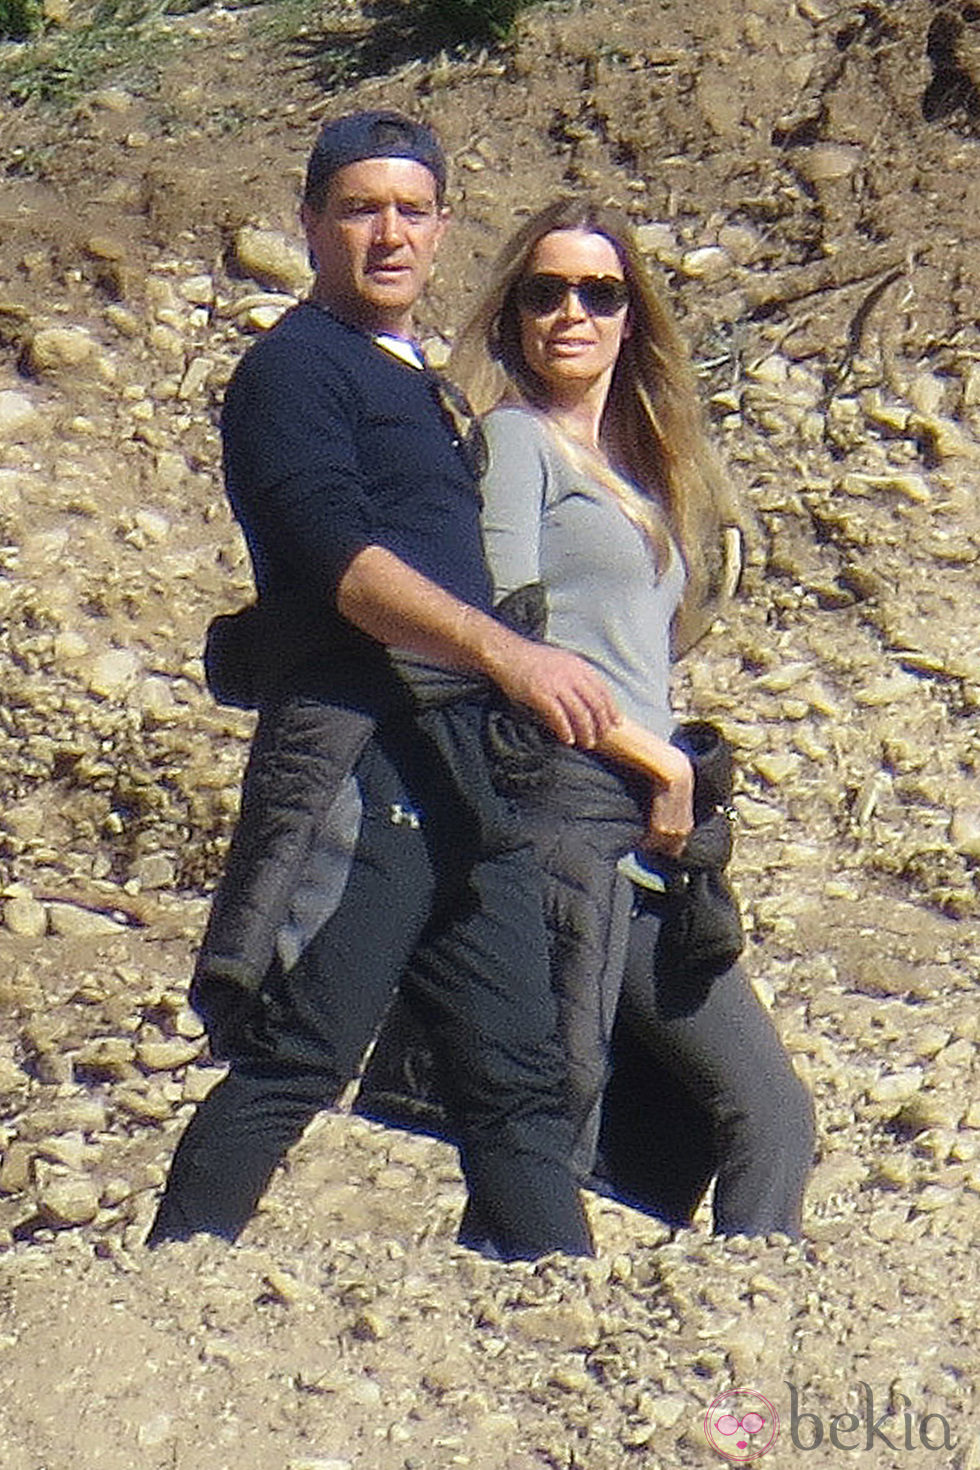 Antonio Banderas y Nicole Kimpel haciendo senderismo por El Caminito del Rey